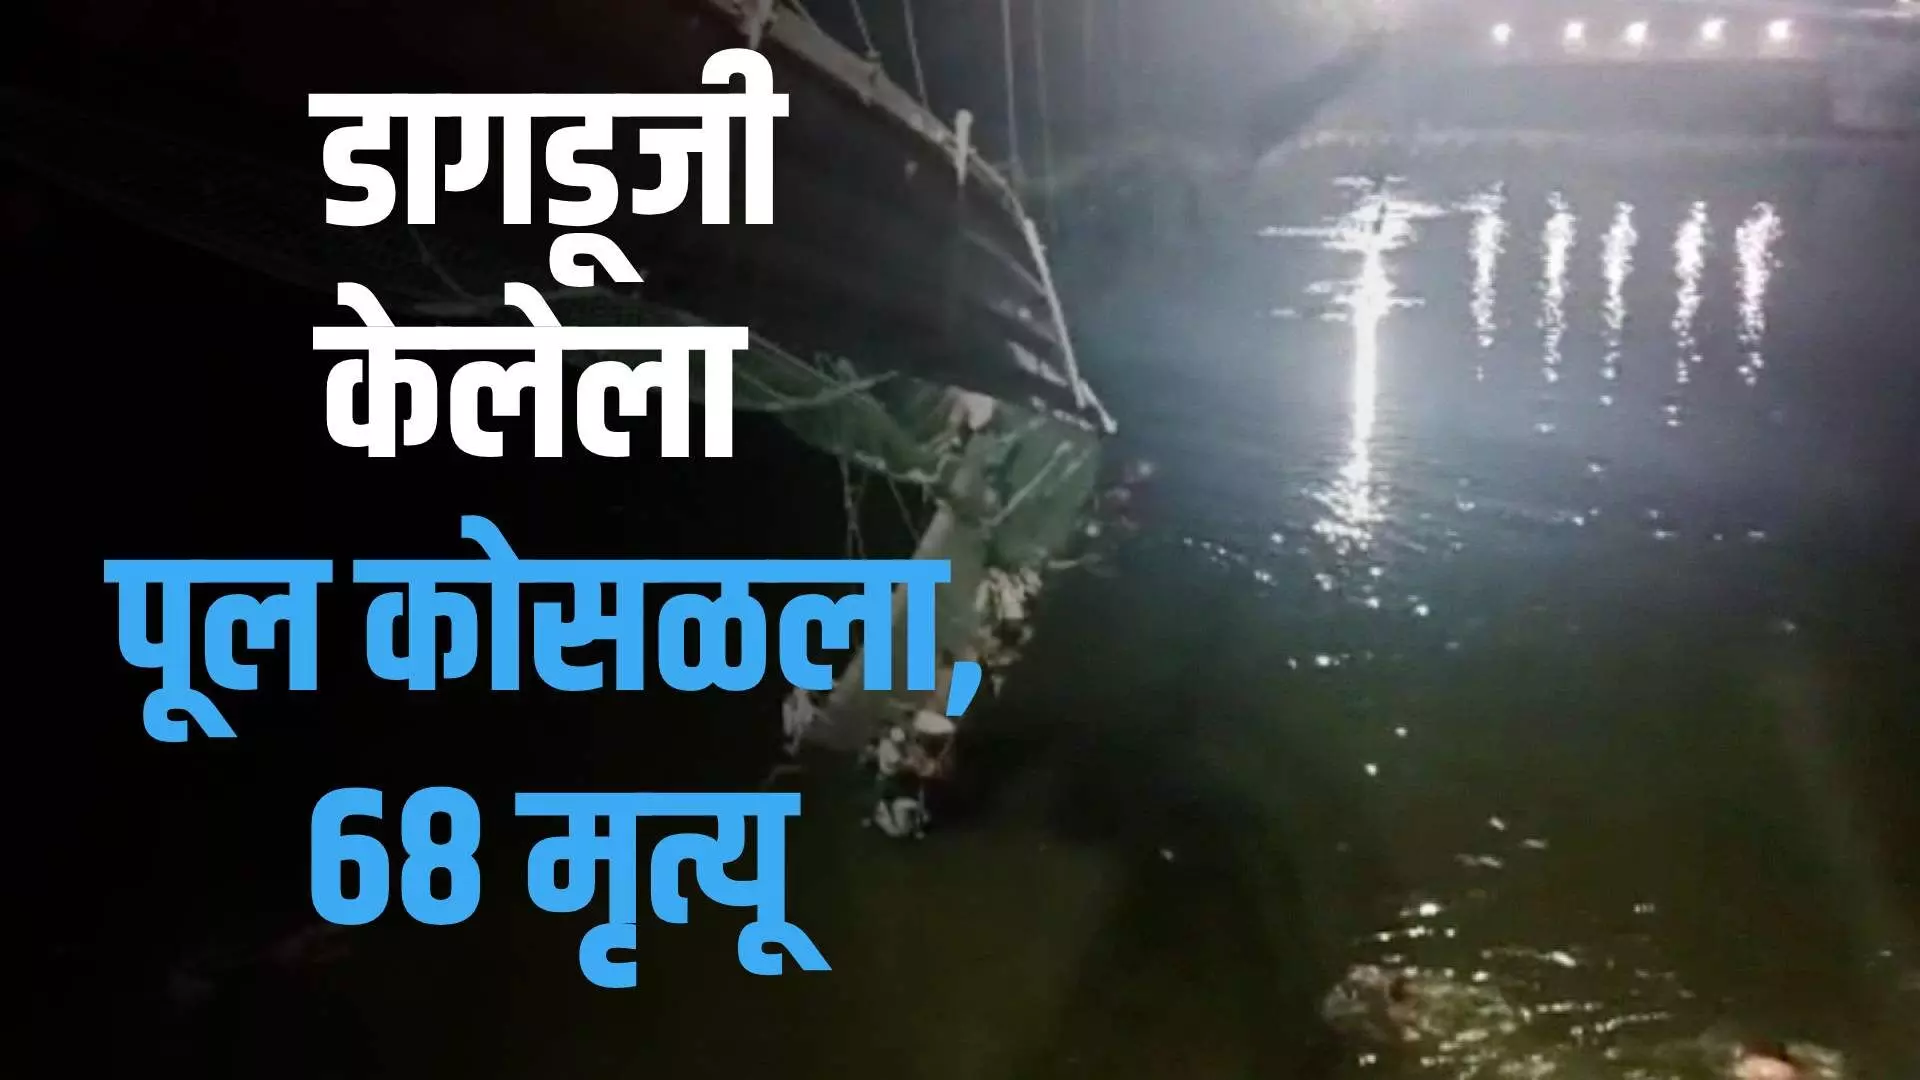 cable bridge collapse in Gujrat : डागडूजी केलेला झुलता पूल को-स-ळ-ला, 68 जणांचा मृ-त्यू